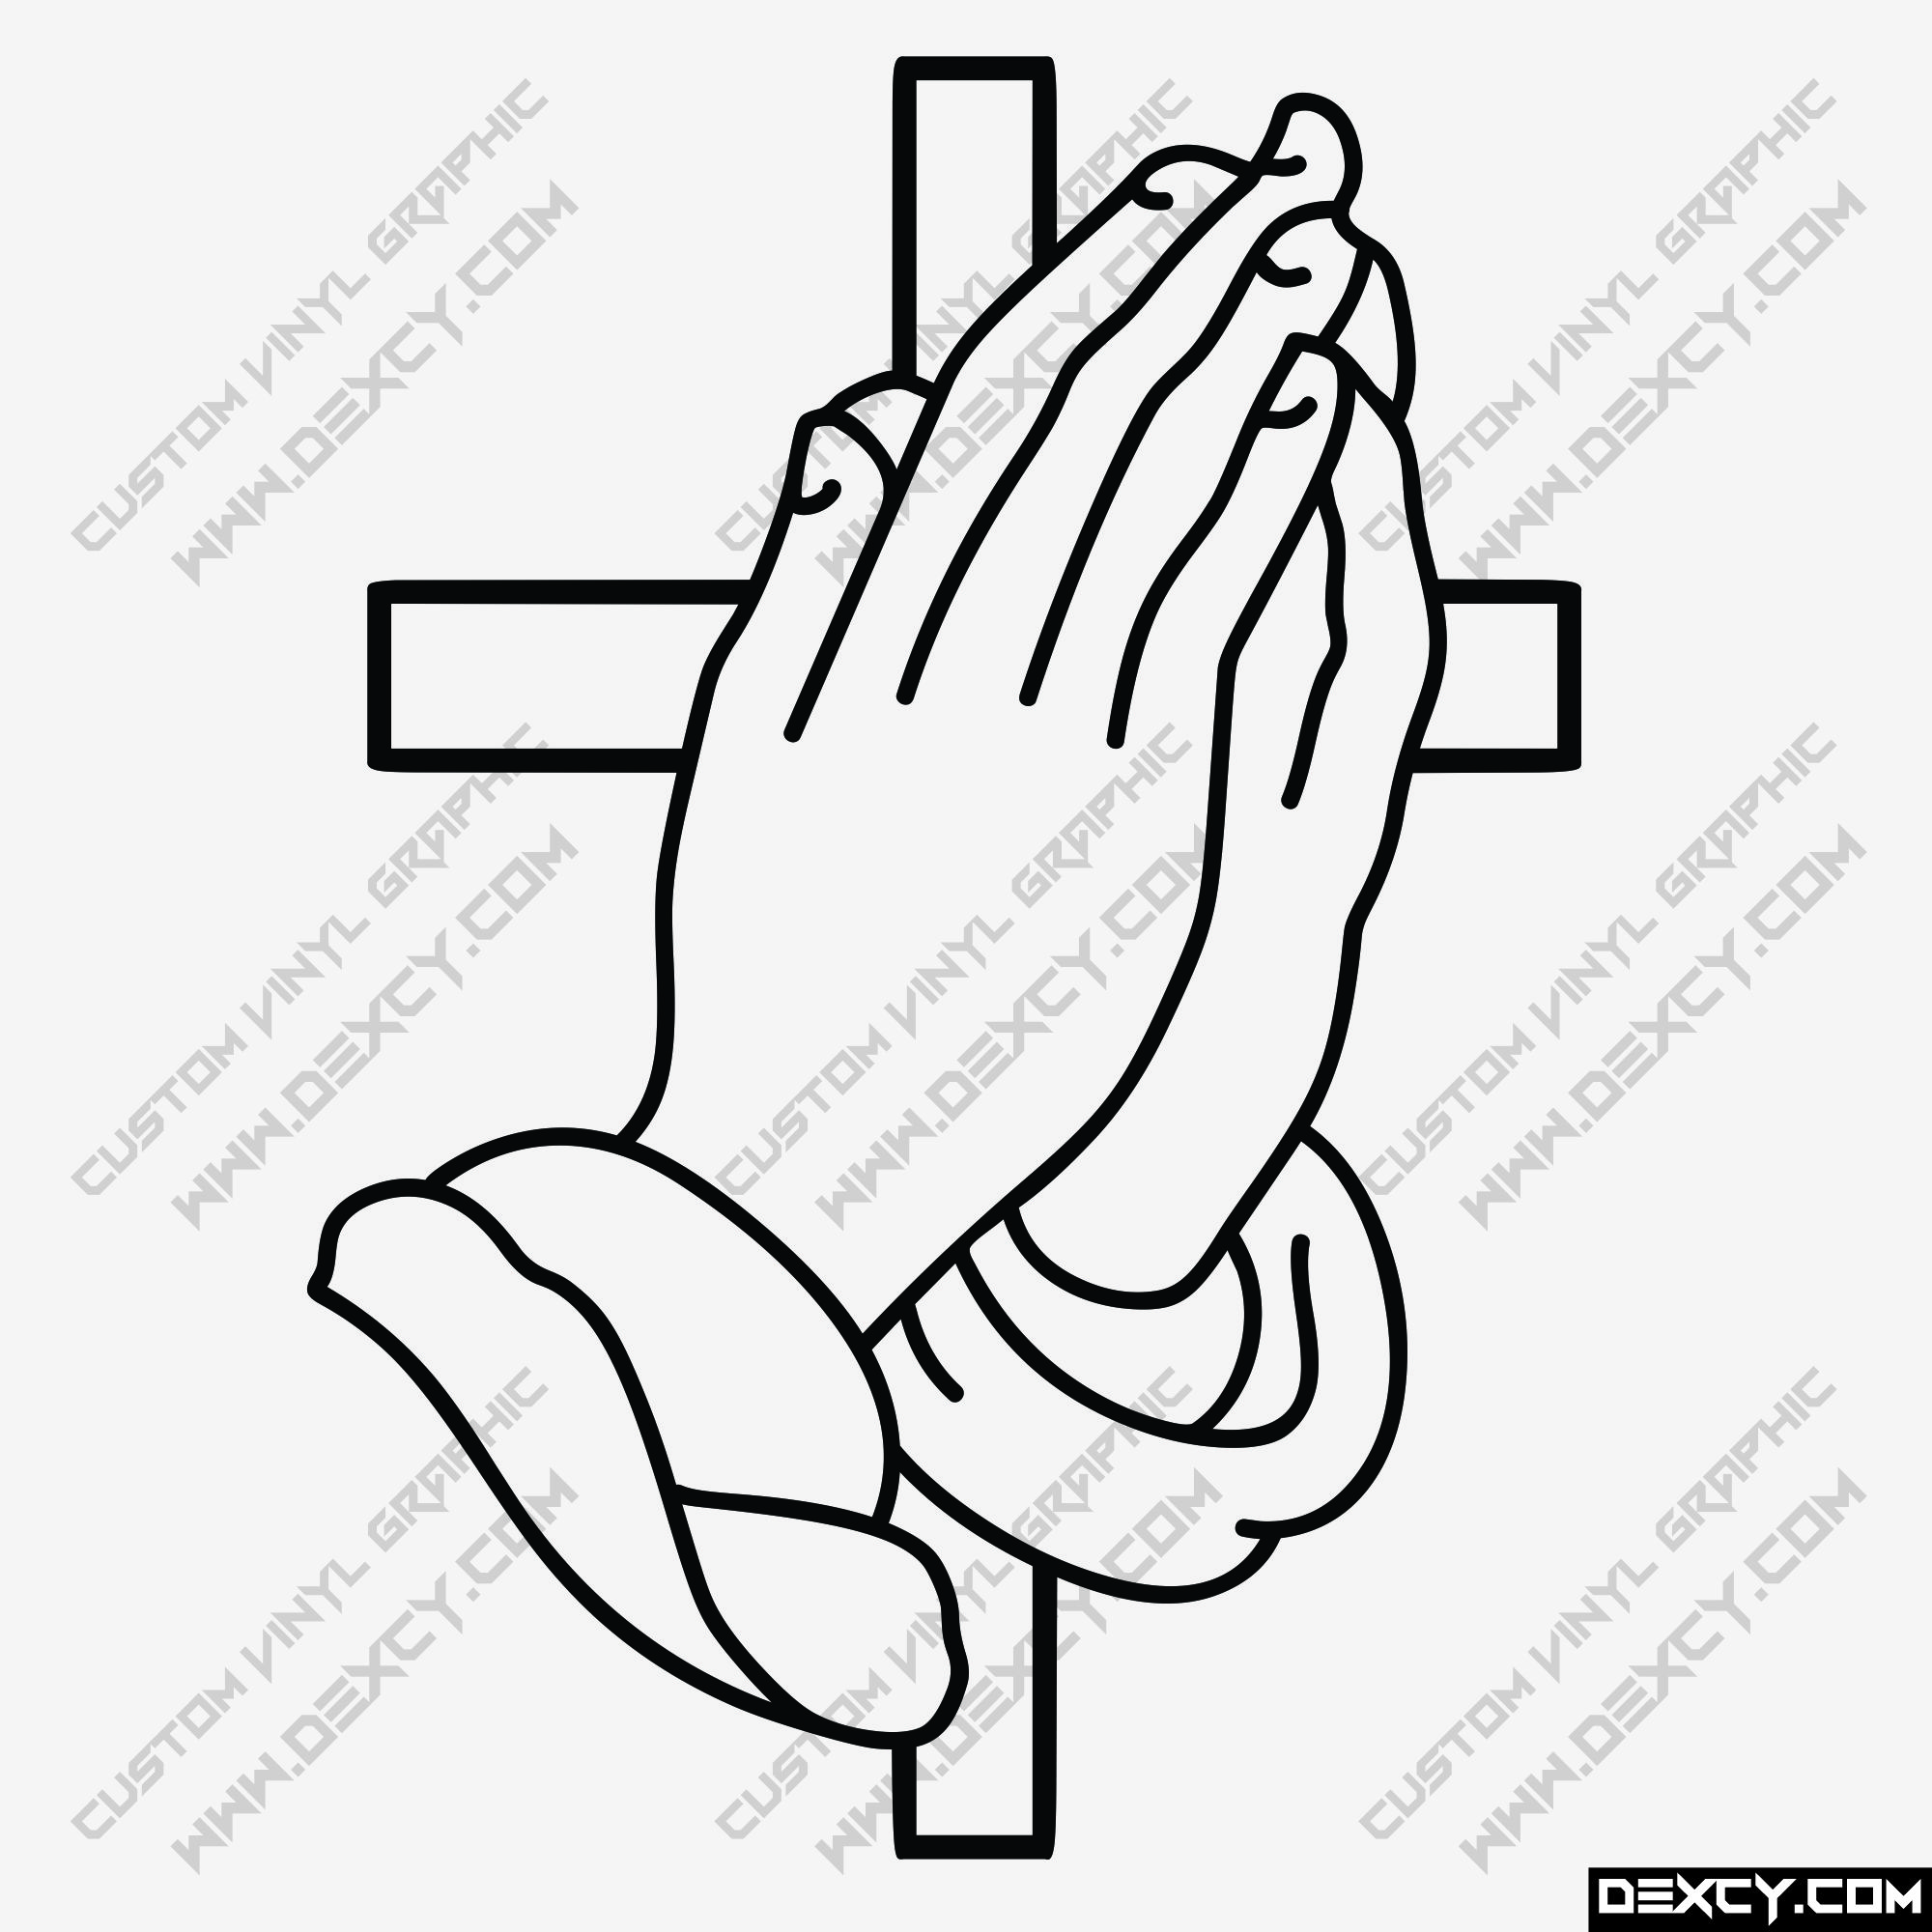 Praying Hands Decals & Stickers